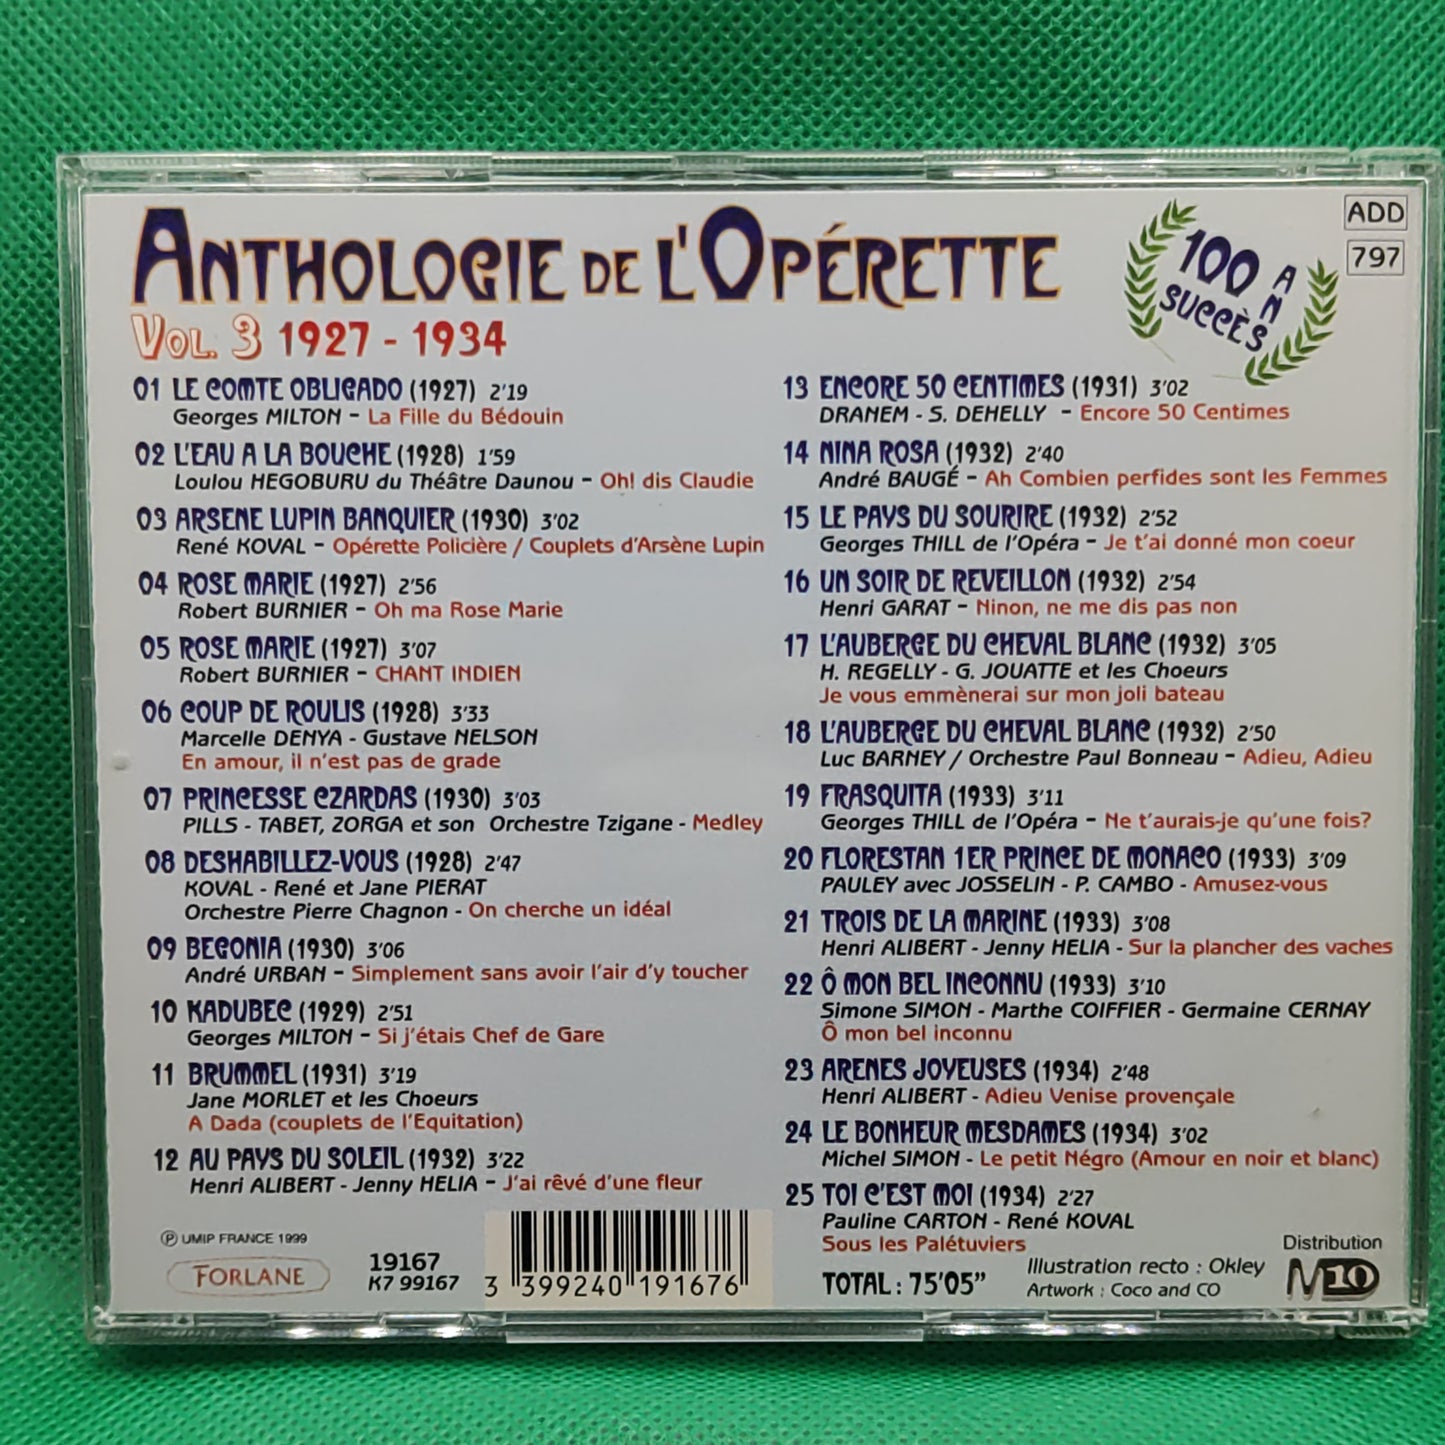 Anthologie de L'Opérette de 1850 à 1950 volume 3 1927-1934